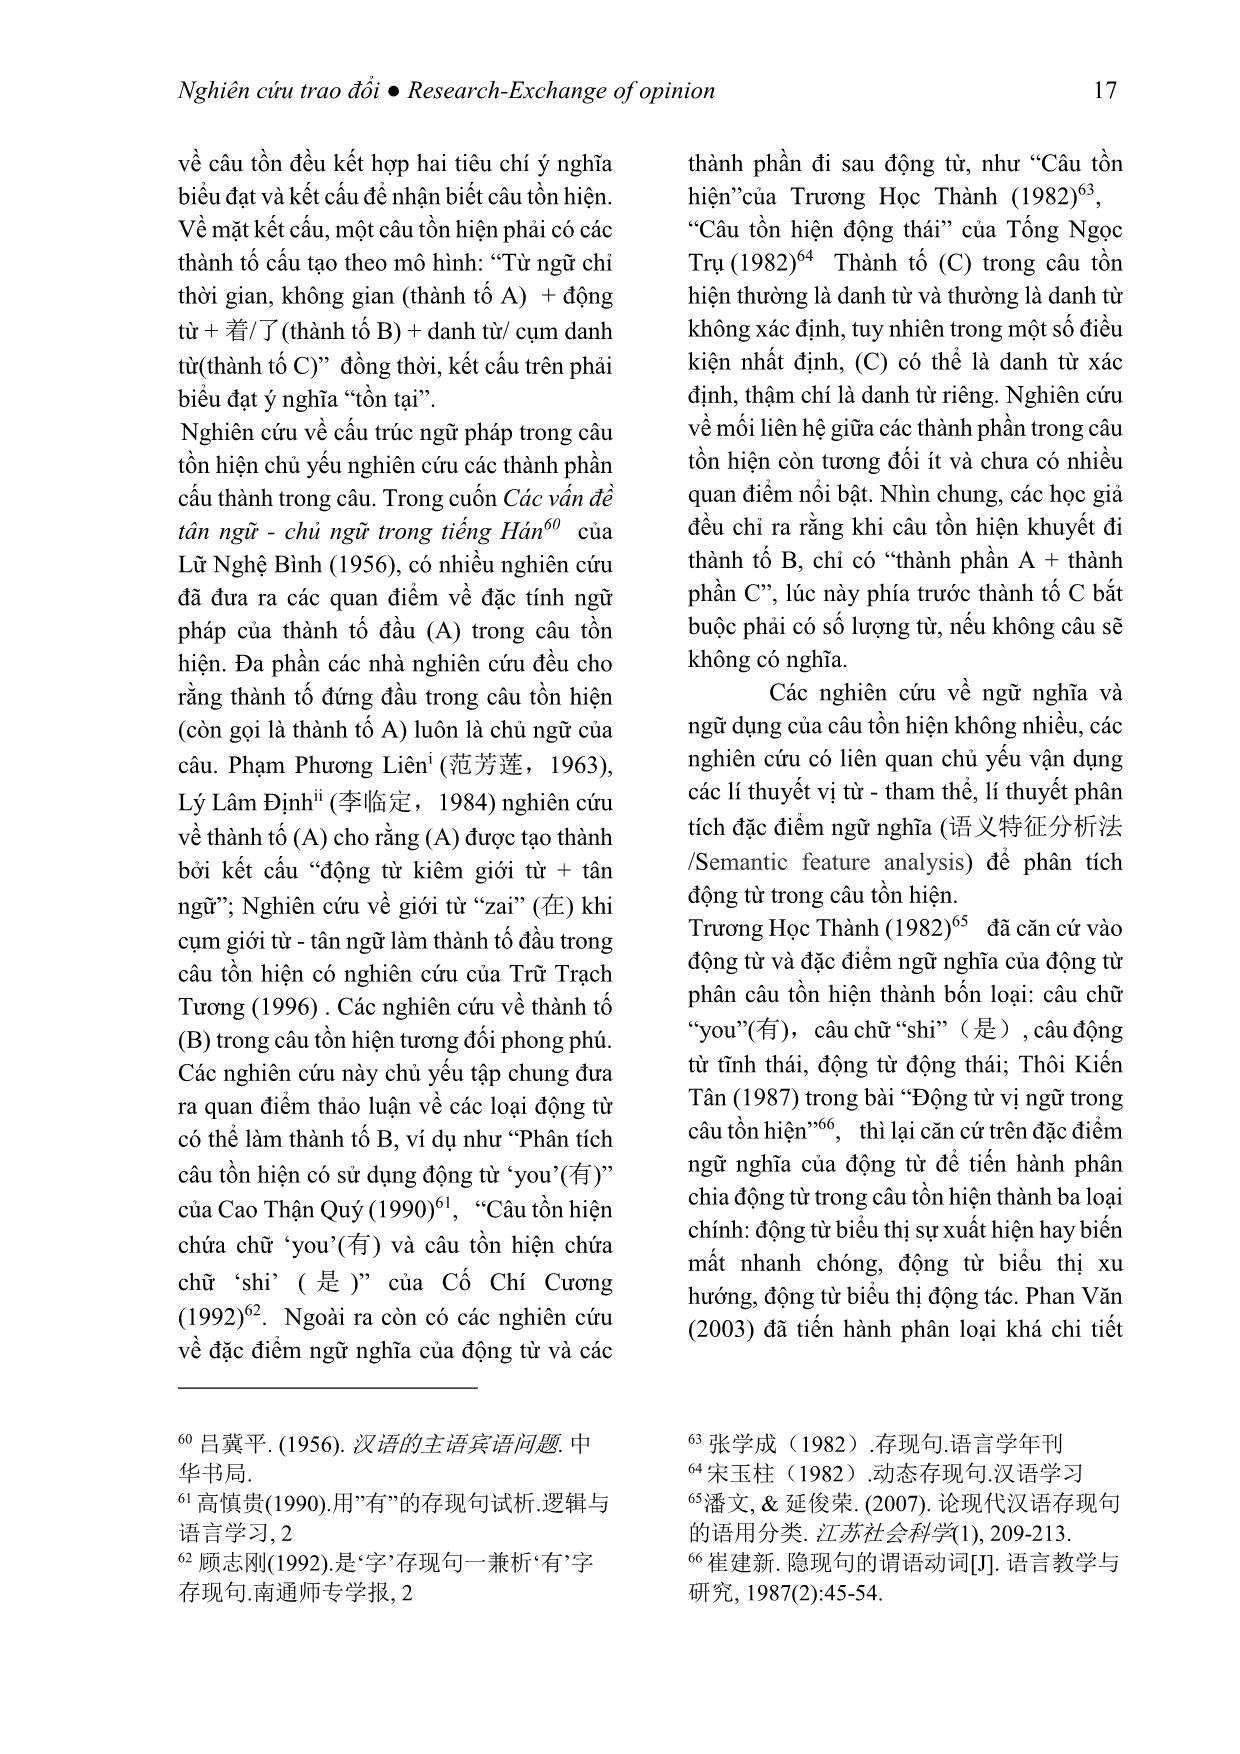 Tình hình nghiên cứu các kiểu câu đặc biệt trong tiếng Trung Quốc tại Trung Quốc trang 9